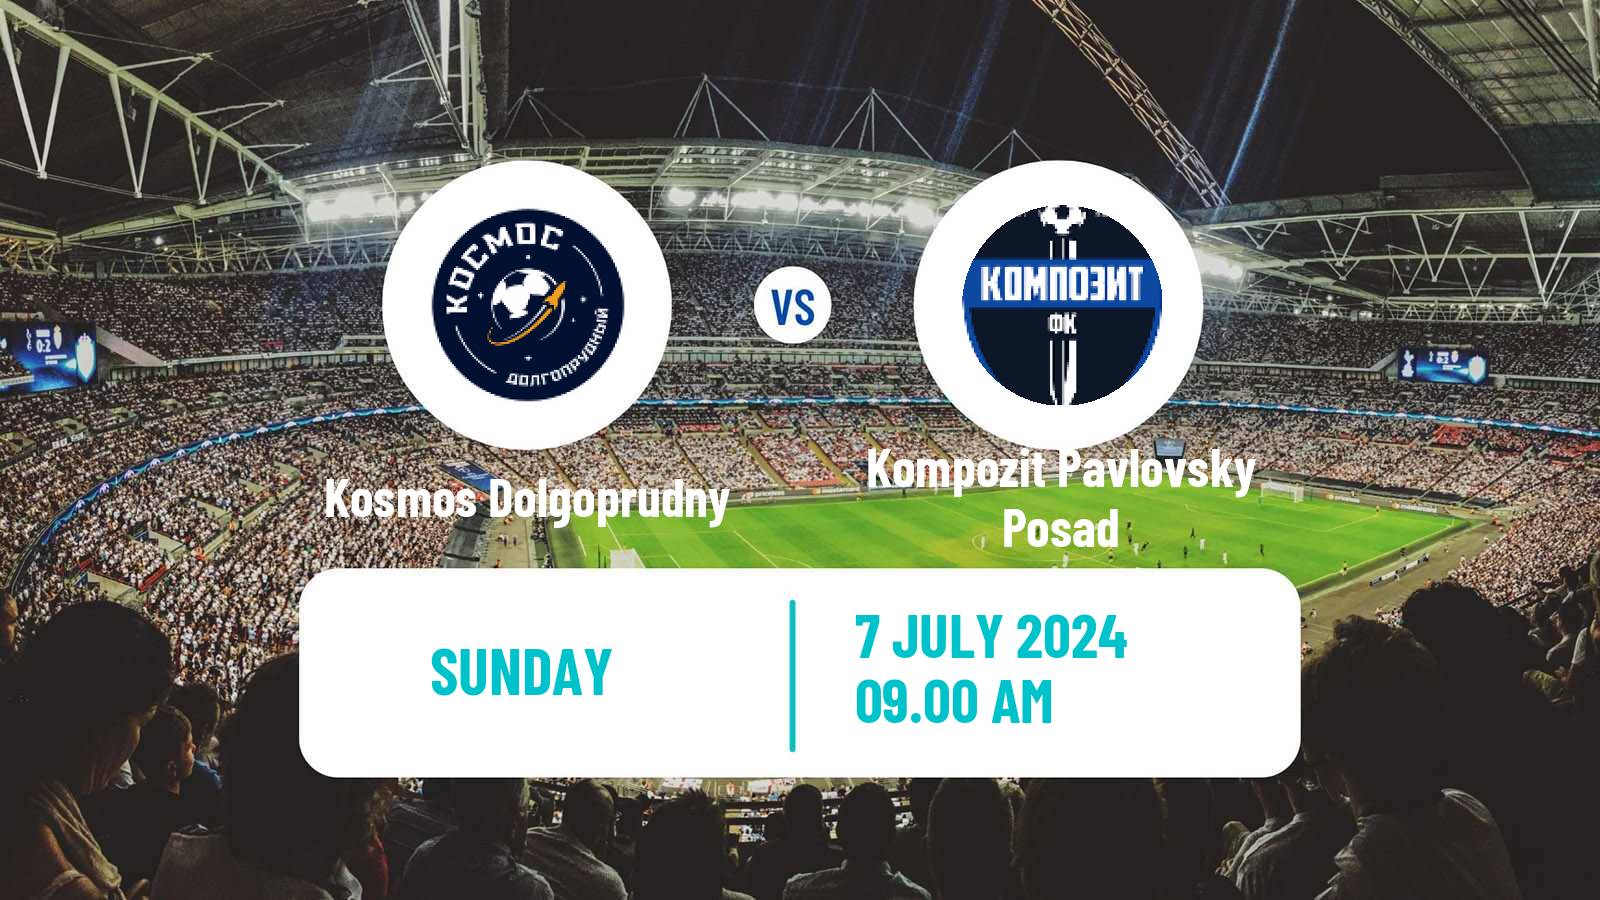 Soccer FNL 2 Division B Group 3 Kosmos Dolgoprudny - Kompozit Pavlovsky Posad